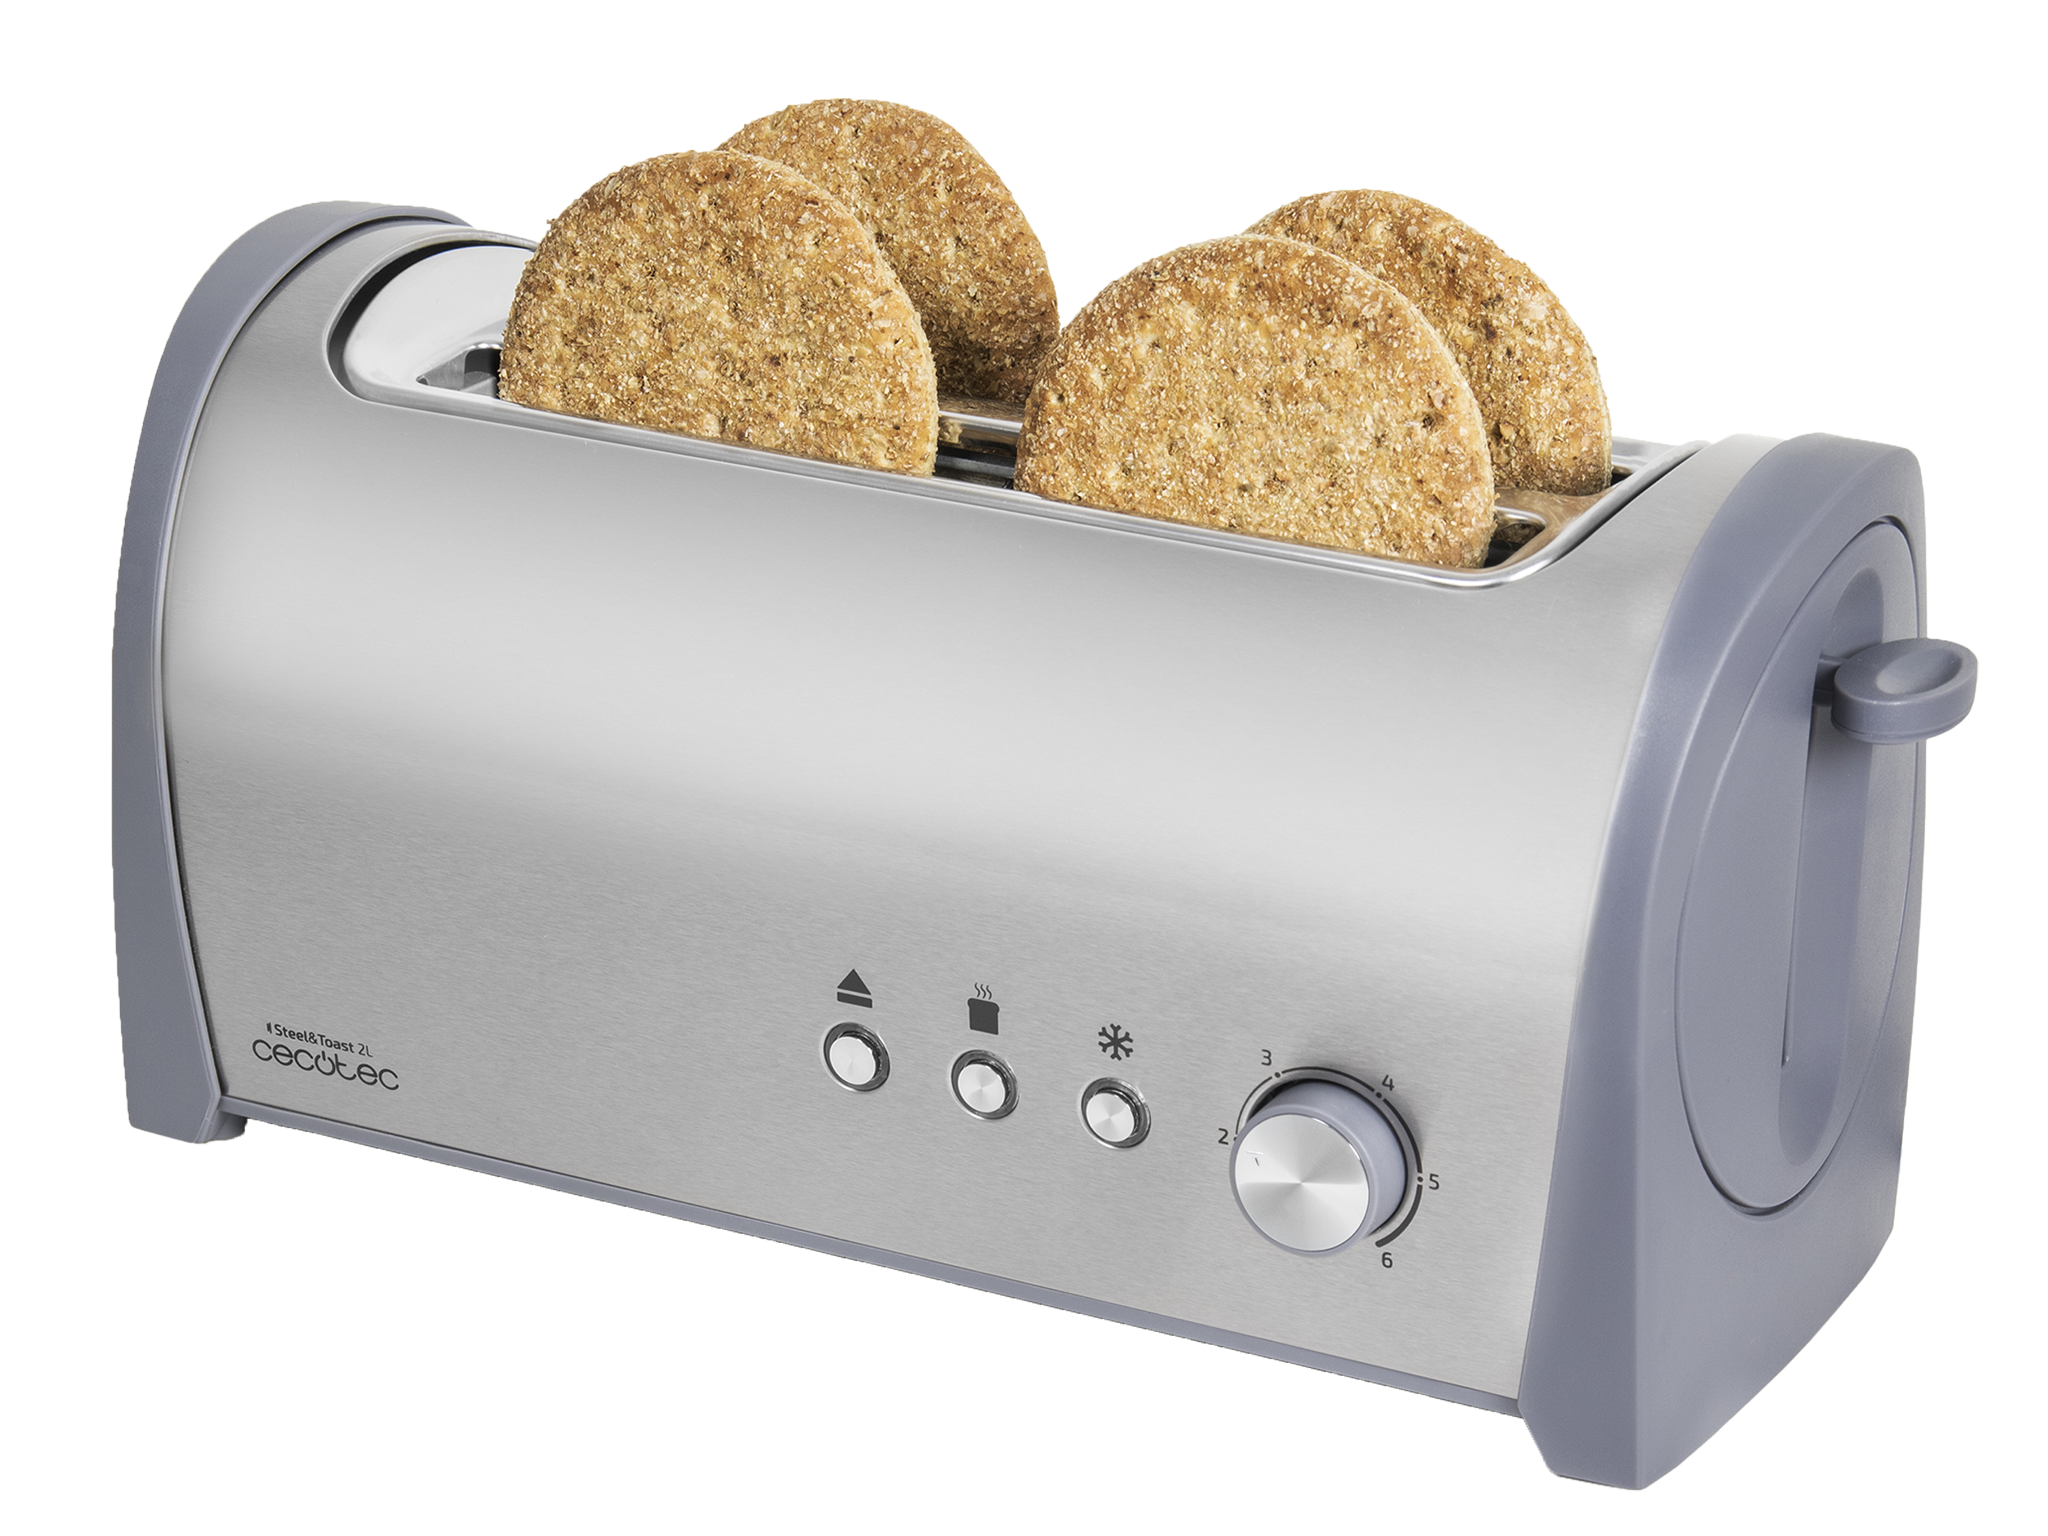 Tostapane in Acciaio Steel&Toast 2 l. 6 livelli di potenza, capienza per 4 toast, 3 funzioni (tostare, riscaldare, scongelare), include supporto per prodotti da forno, cassettino raccoglibriciole, 1400 W